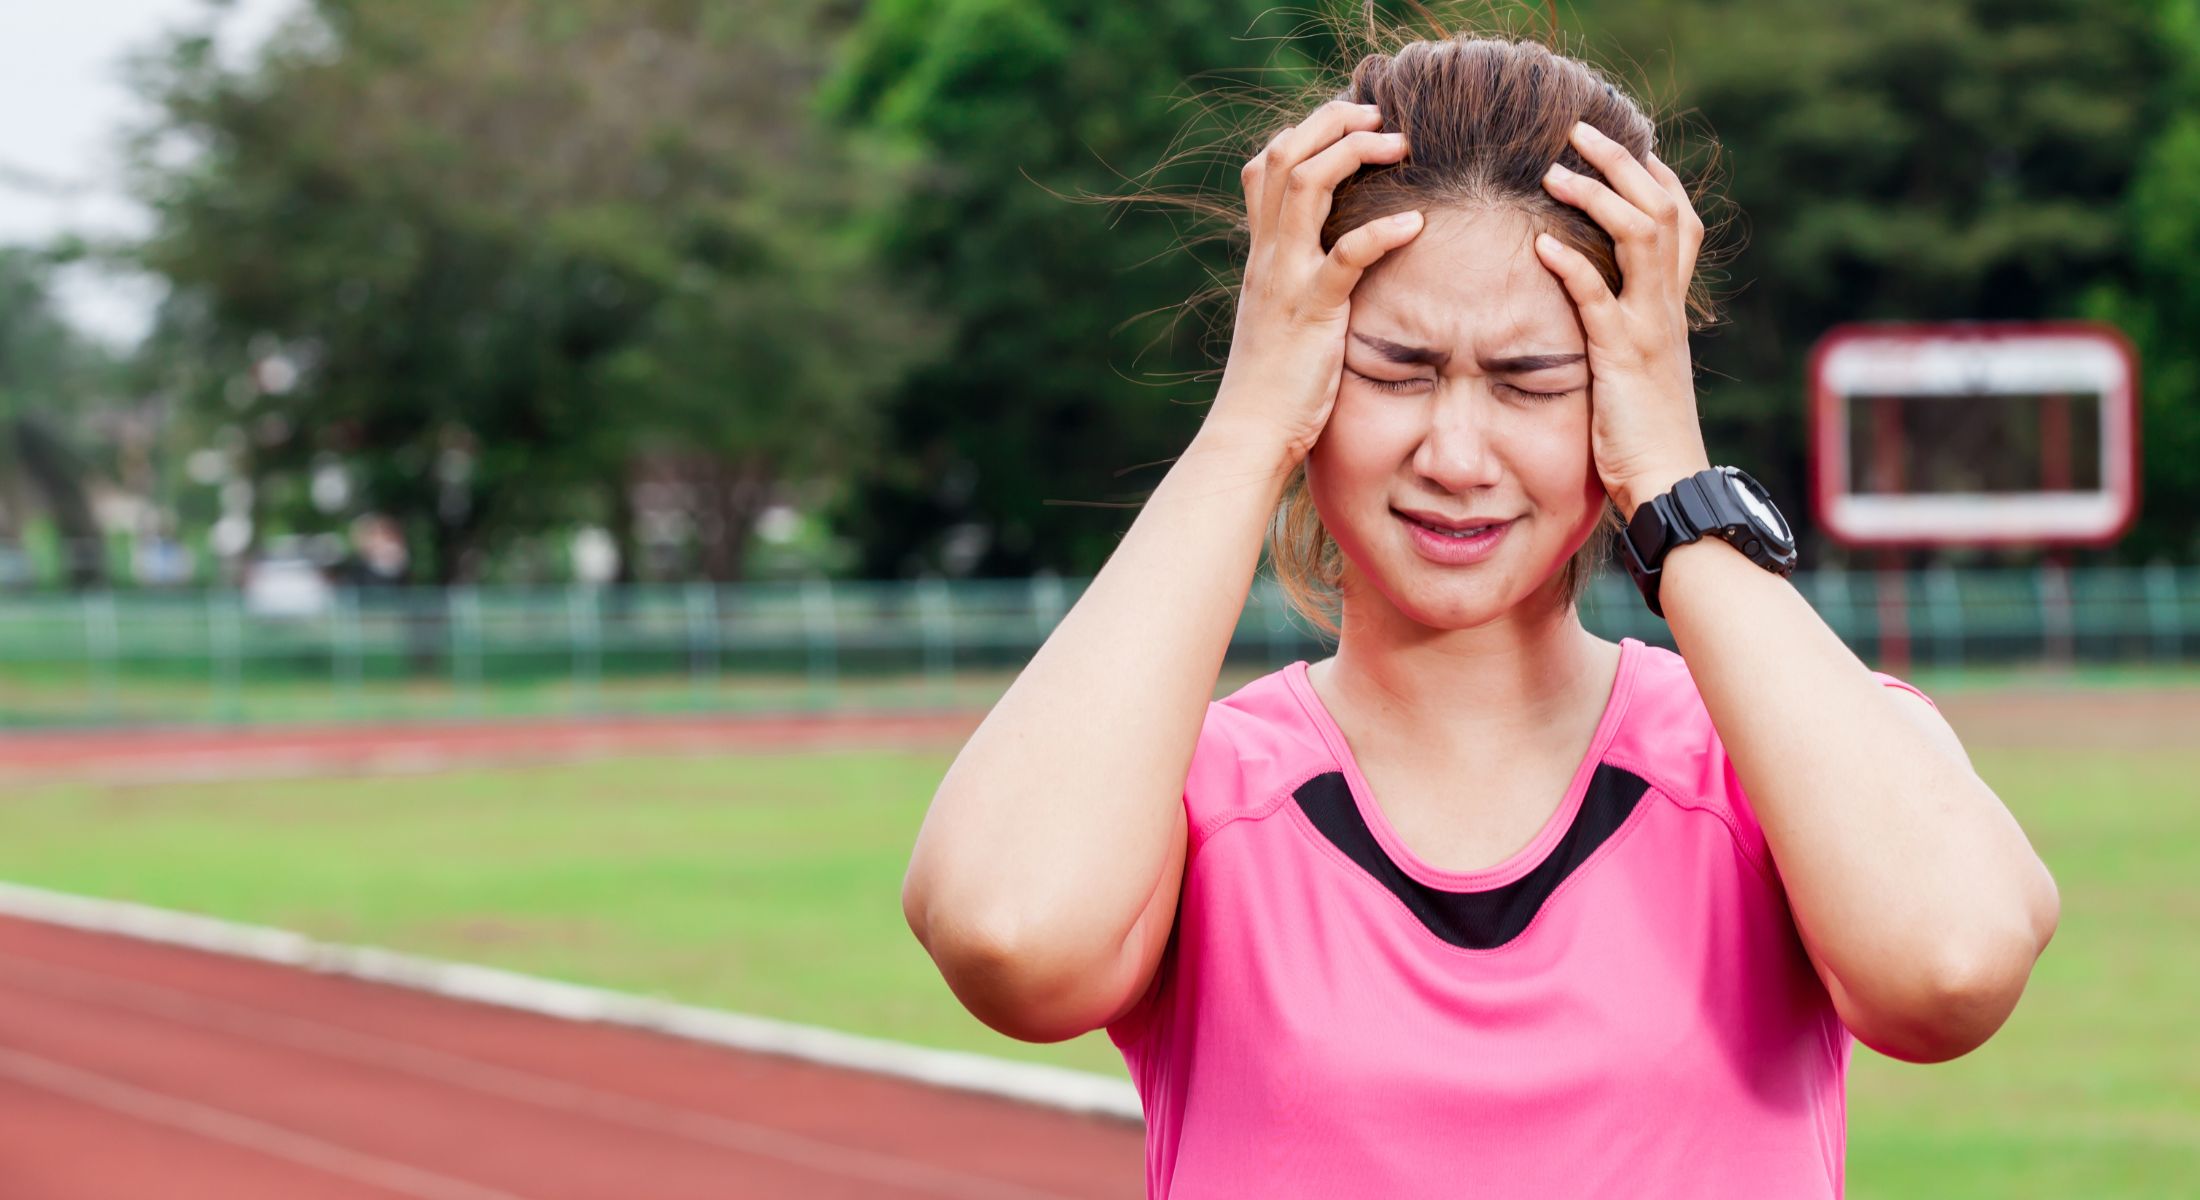 Artigo - Dores de cabeça (cefaleias) e dores cervicofaciais: os principais tipos, sintomas associados e a sua influência na prática esportiva